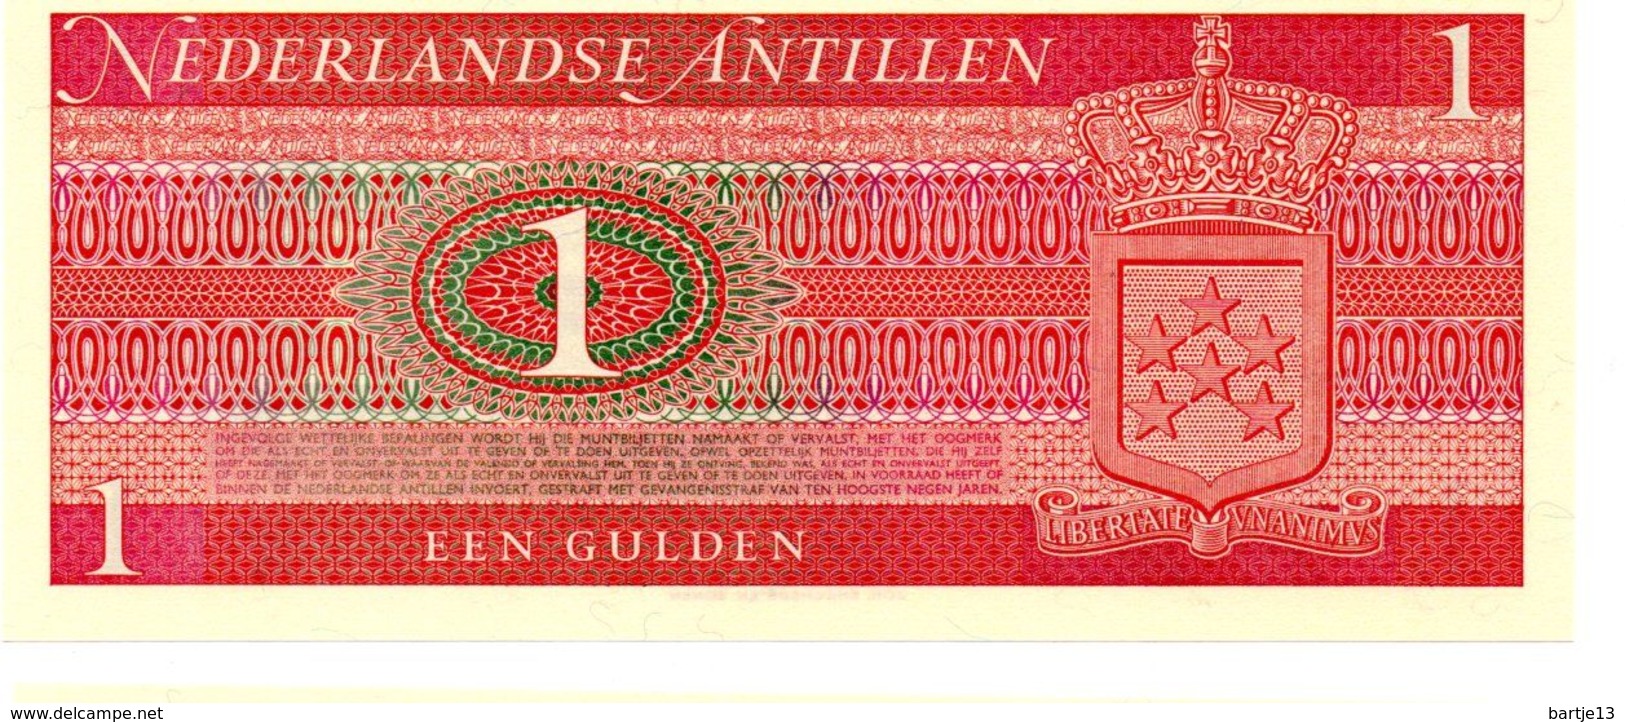 NEDERLANDSE ANTILLEN 1 GULDEN PICK 20a UNCIRCULATED - Niederländische Antillen (...-1986)